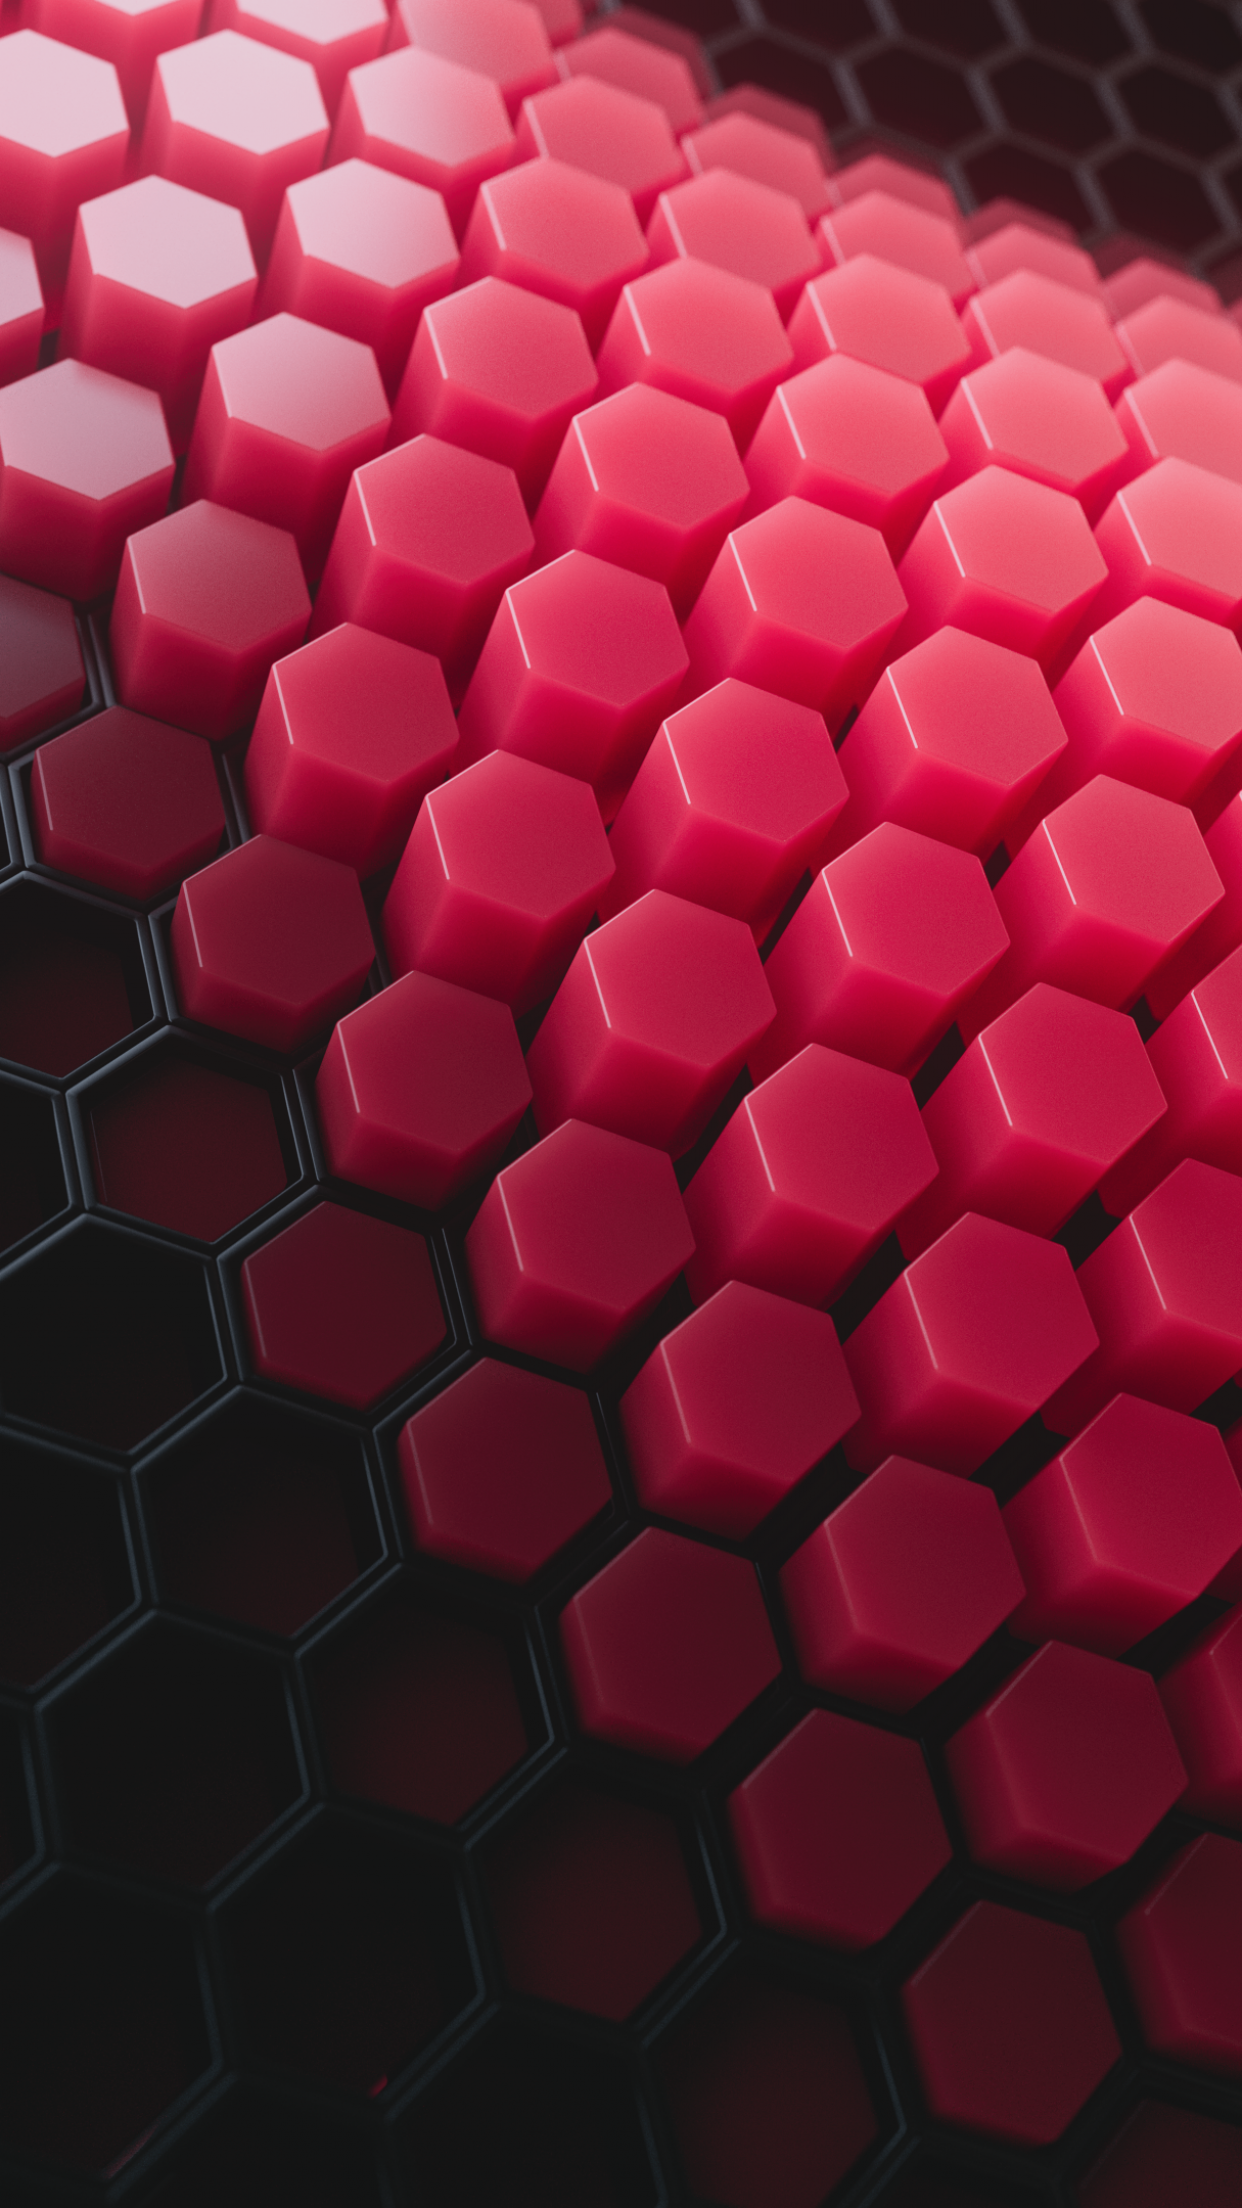 Hình nền Hexagons 4K, mẫu, trừu tượng sẽ là một trải nghiệm tuyệt vời cho mắt của bạn. Được thiết kế với những đường nét trừu tượng, hình nền này sẽ đem lại cho bạn sự mới mẻ và đẹp mắt mỗi khi mở khóa chiếc điện thoại của mình.